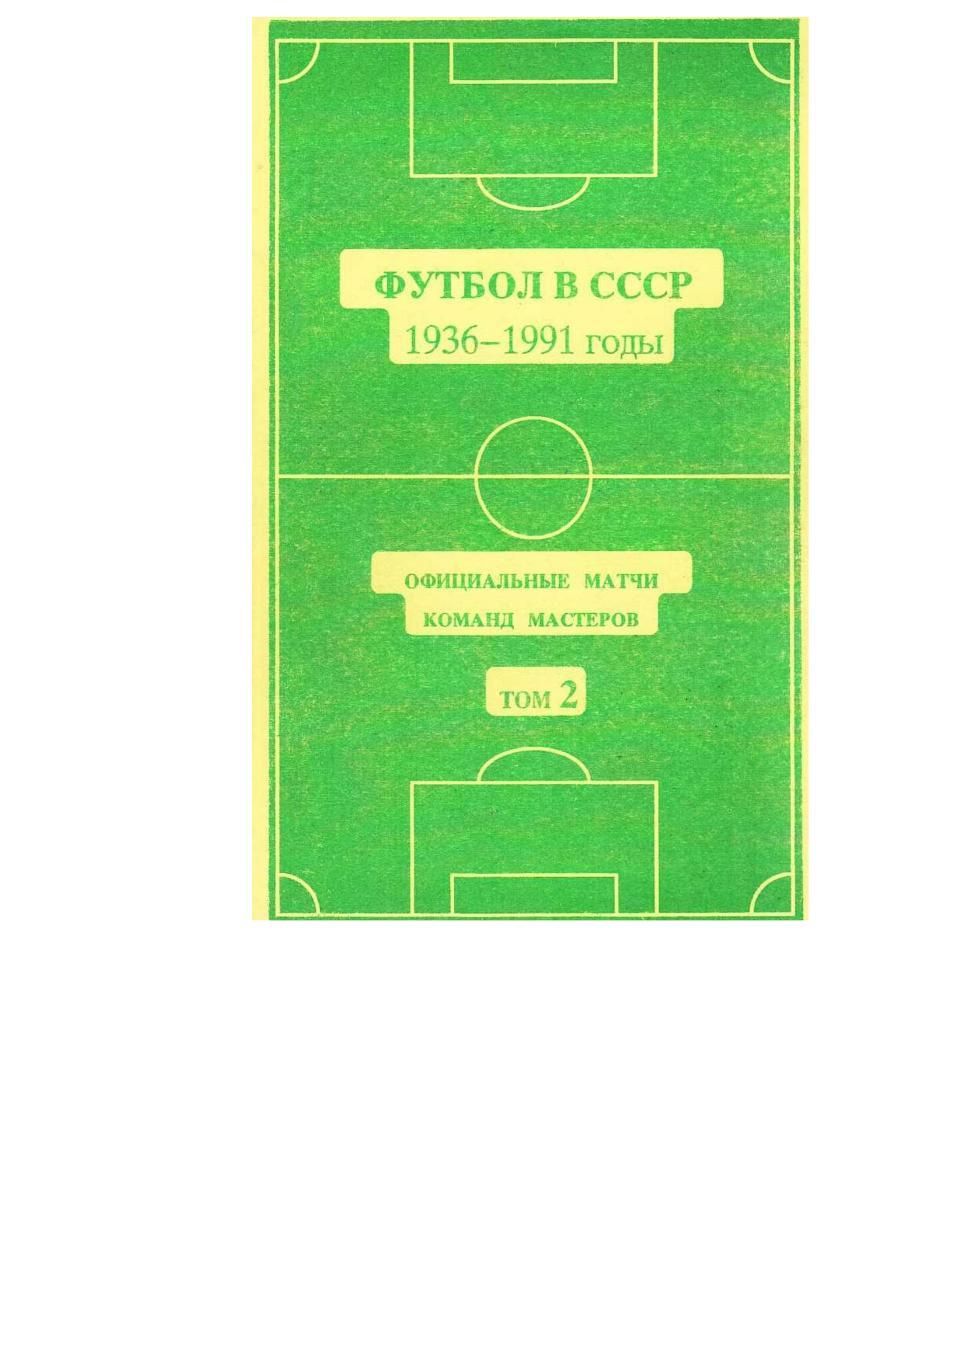 Футбол в СССР. 1965–1977 годы. Официальные матчи команд мастеров. Том 2.